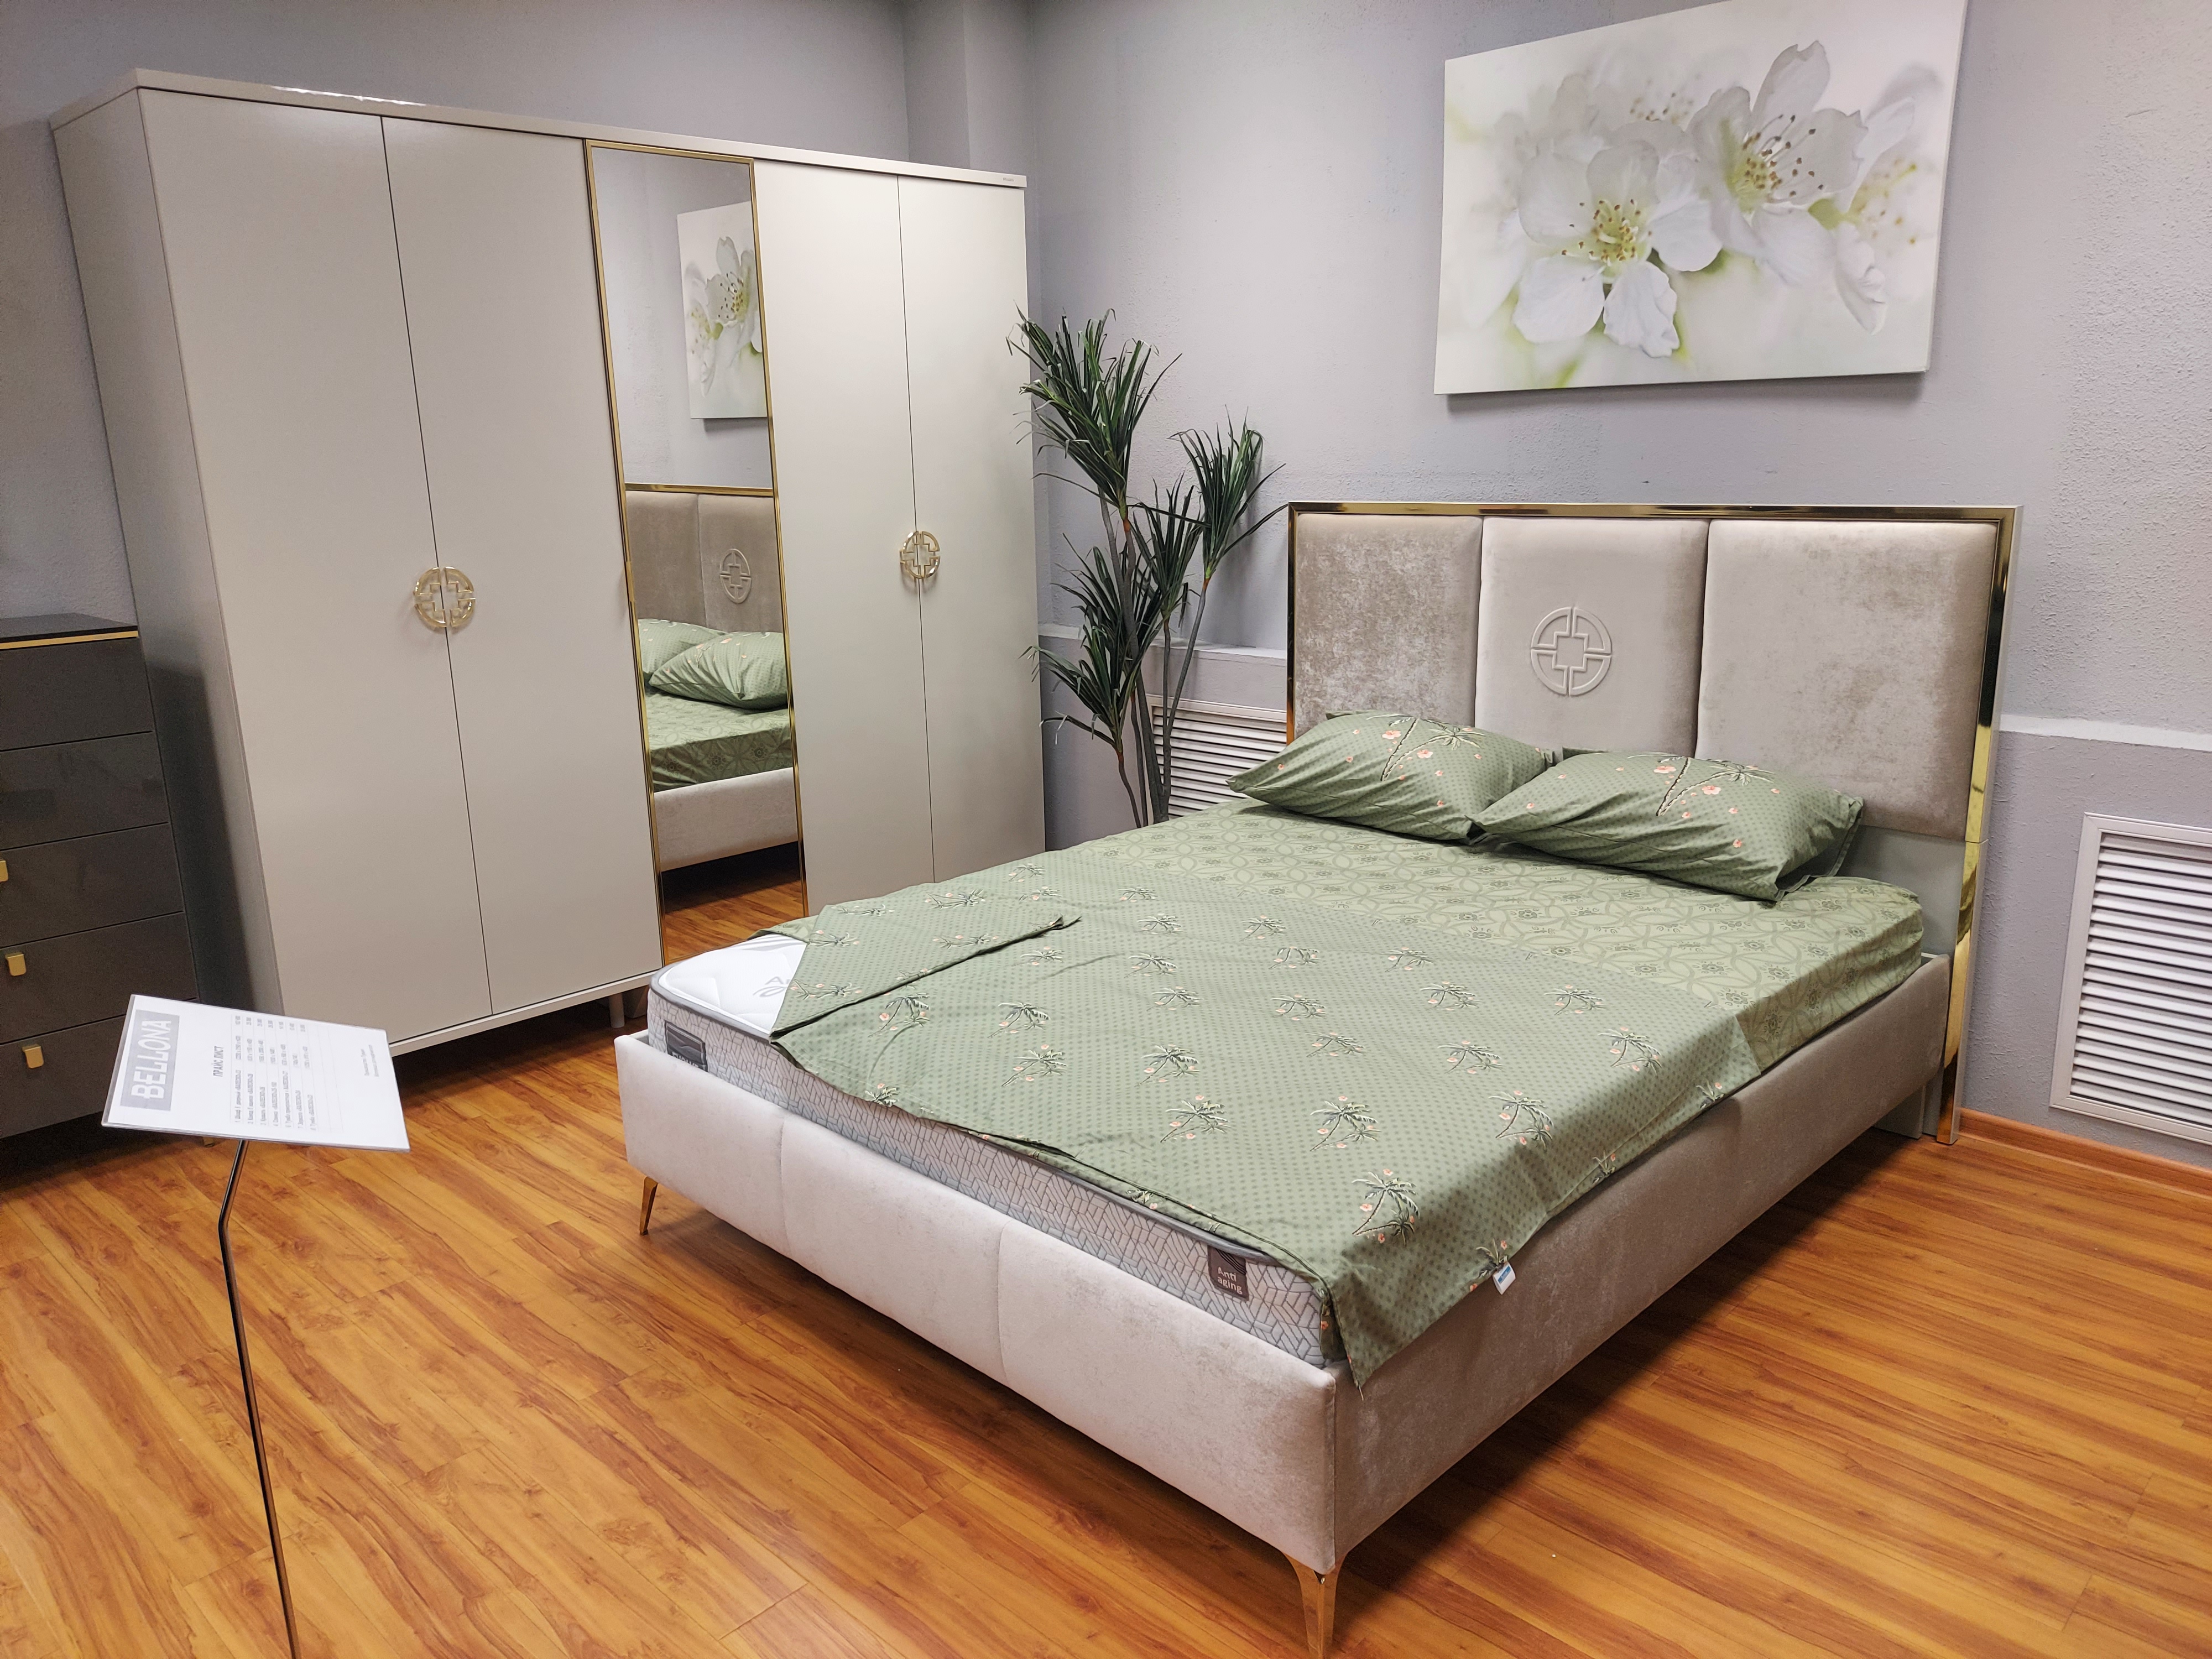 Кровать Bellona Valesco, двуспальная, 160х200 см (VALS-25-160+VALS-26-160)VALS-25-160+VALS-26-160)